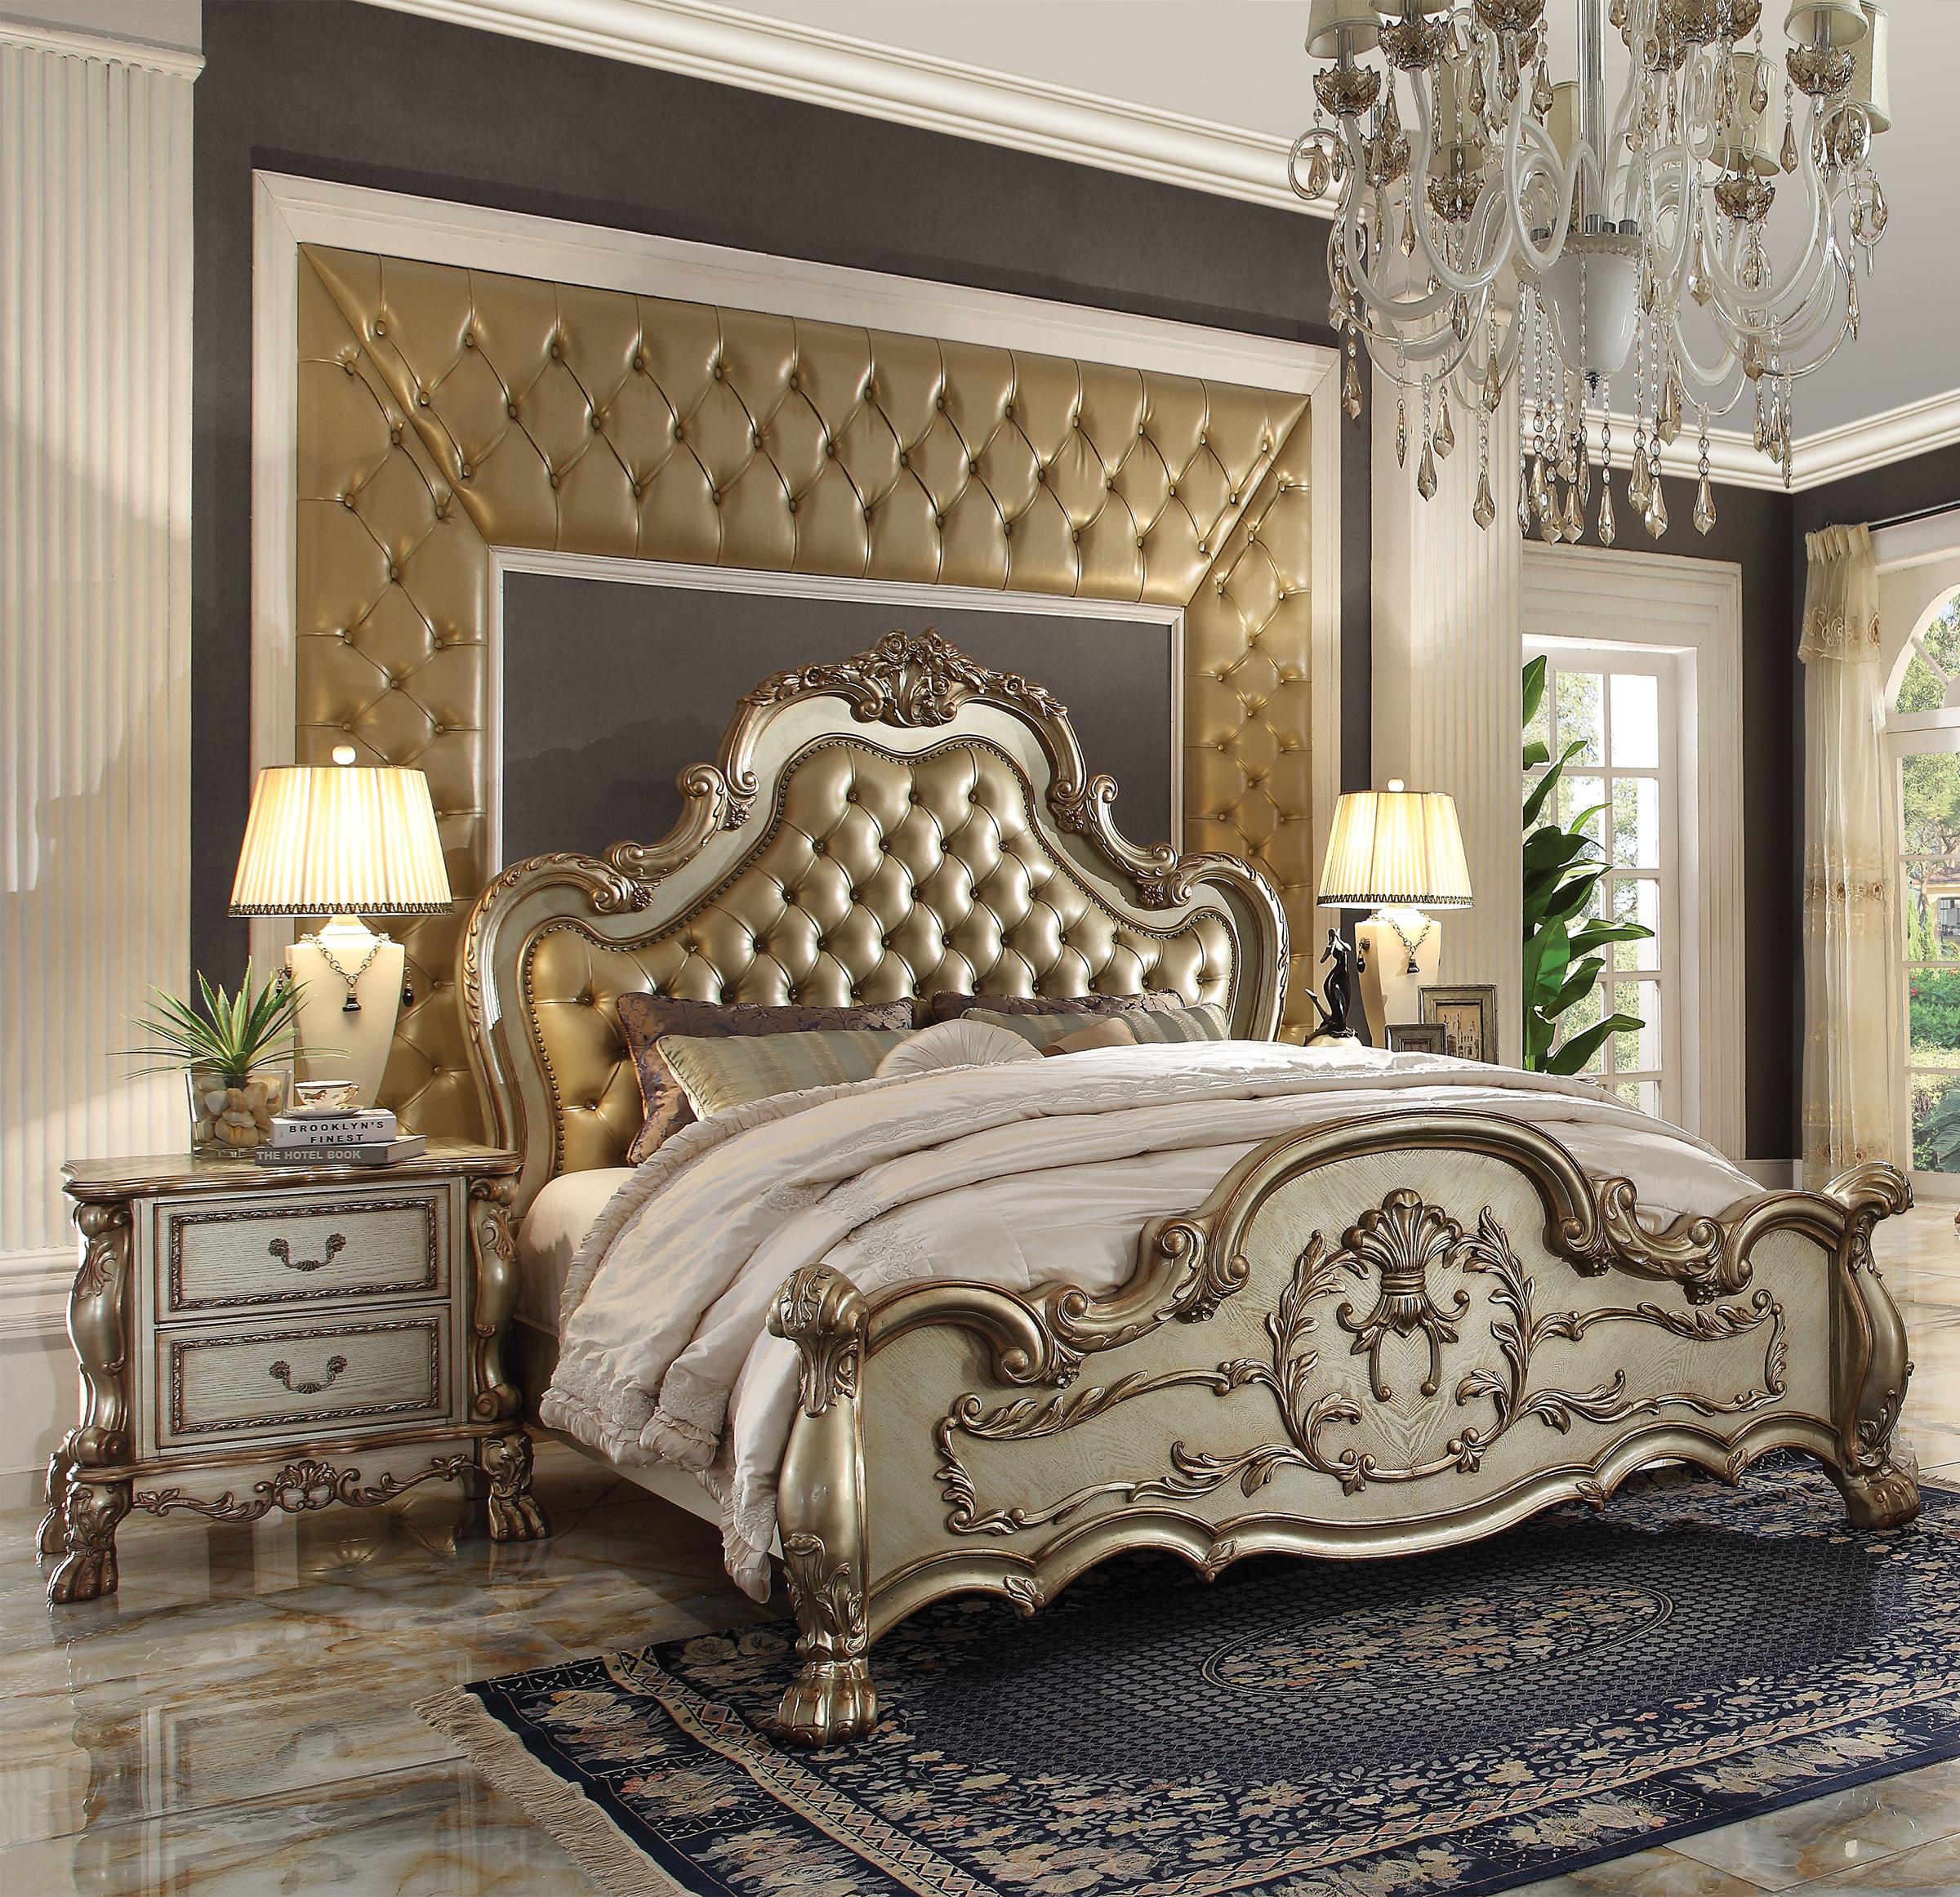 

    
Tufted Gold Patina Queen Bedroom Set 3Pcs Dresden 23160Q Acme Victorian Classic
